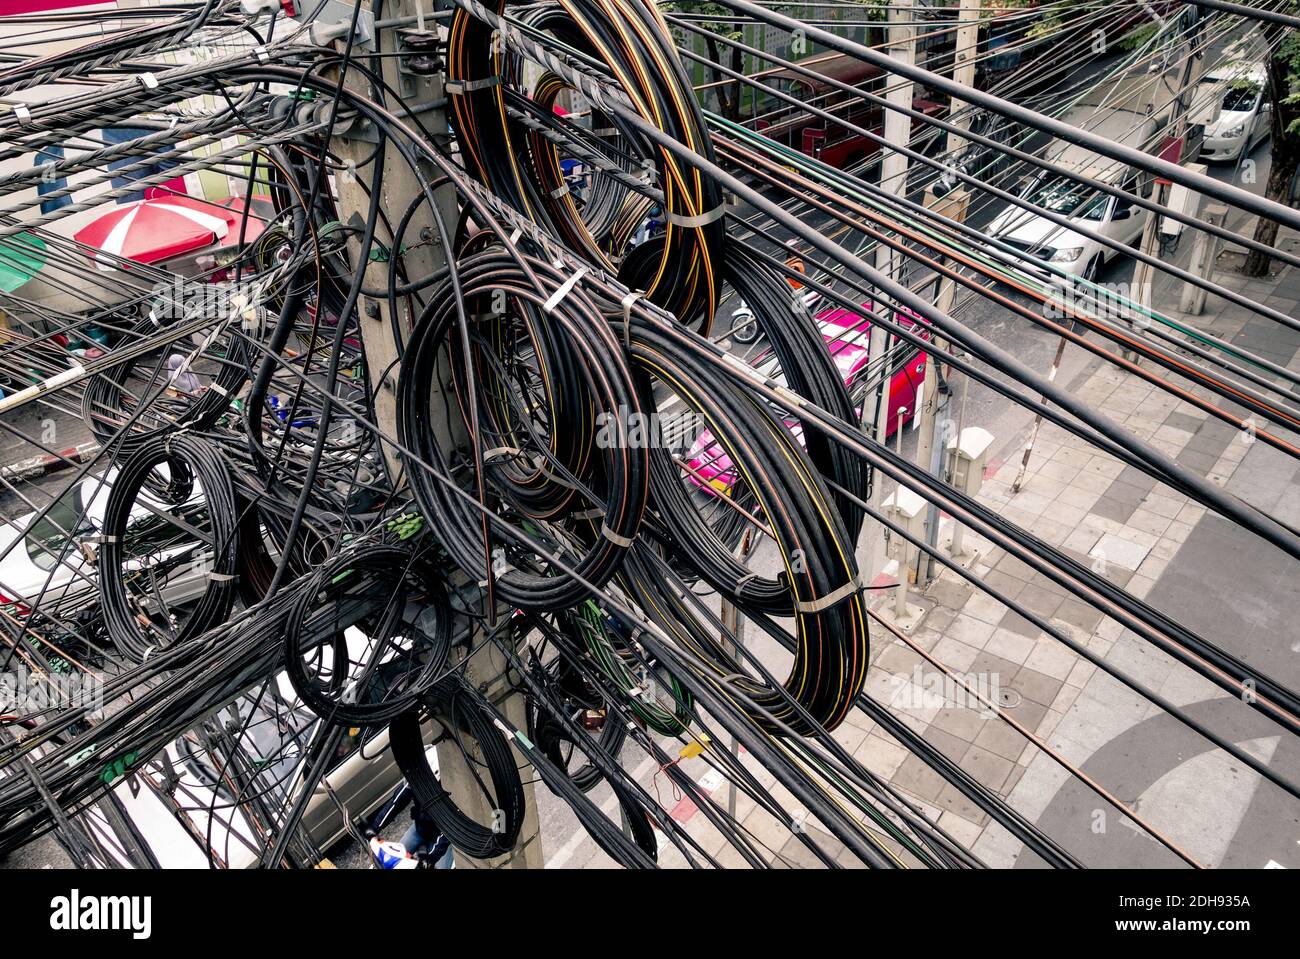 Chaotische elektrische Kabel in Bangkok - Beispiel für nicht abgedeckte optische Glasfasertechnologie im Freien in südostasiatischen Städten Stockfoto